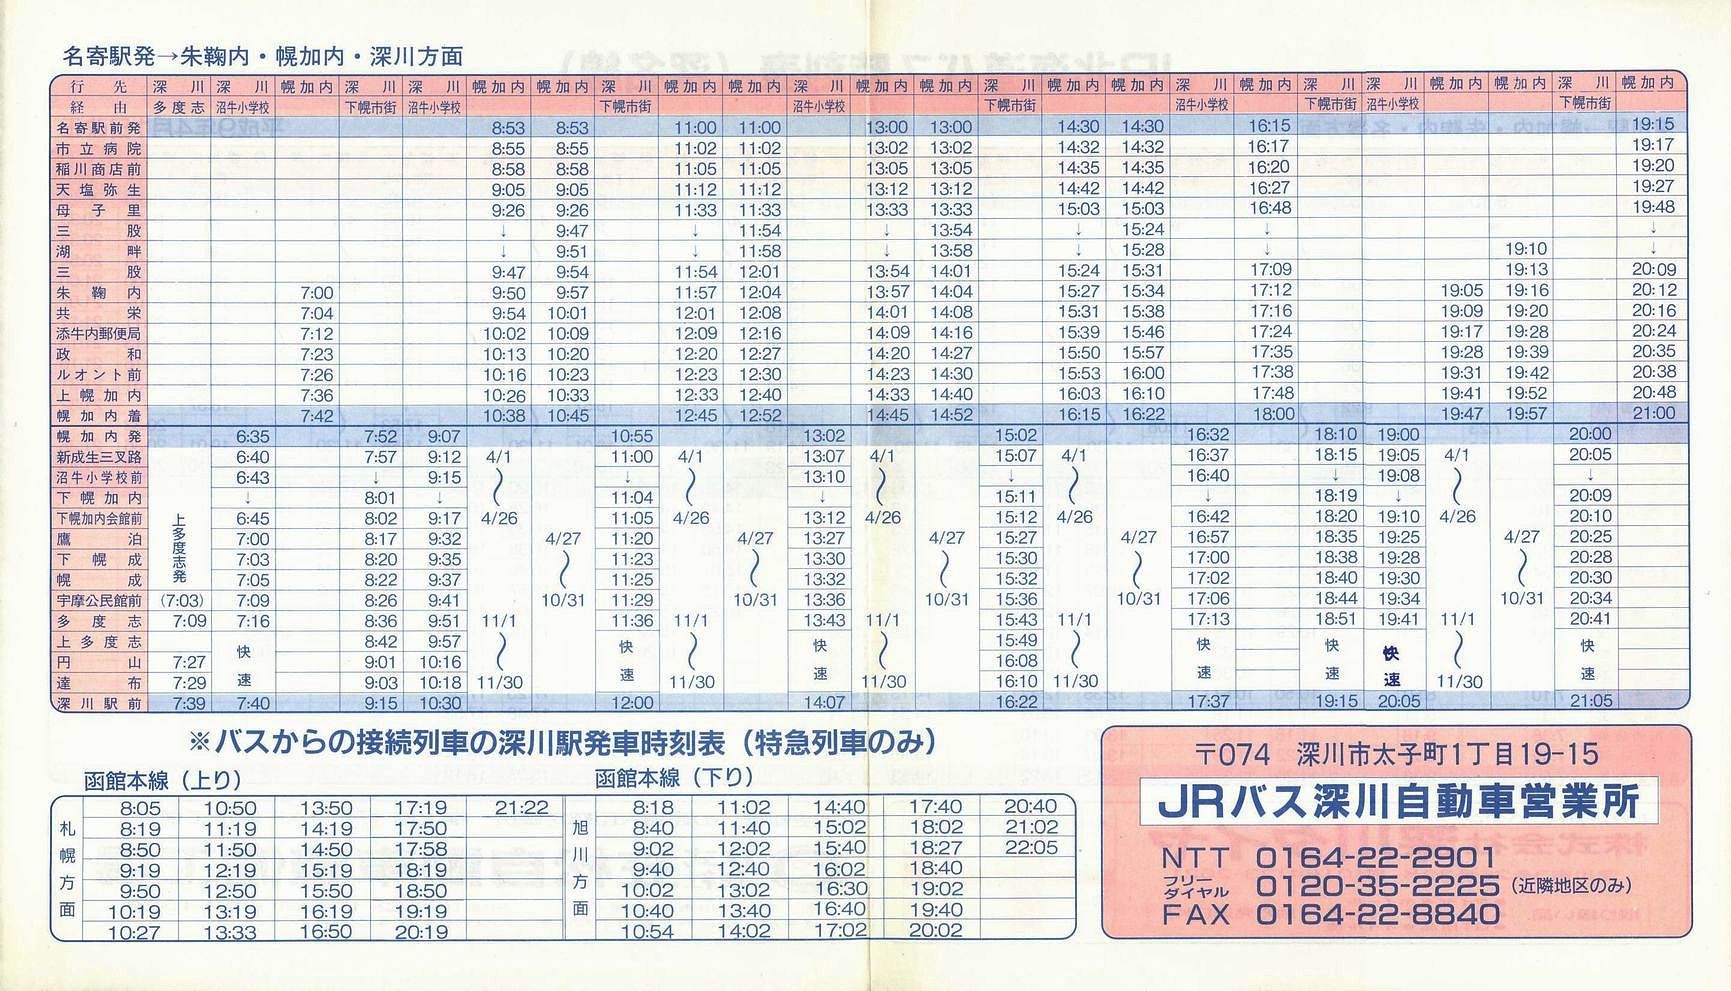 1997-04-01改正_ＪＲ北海道バス_深名線時刻表裏面